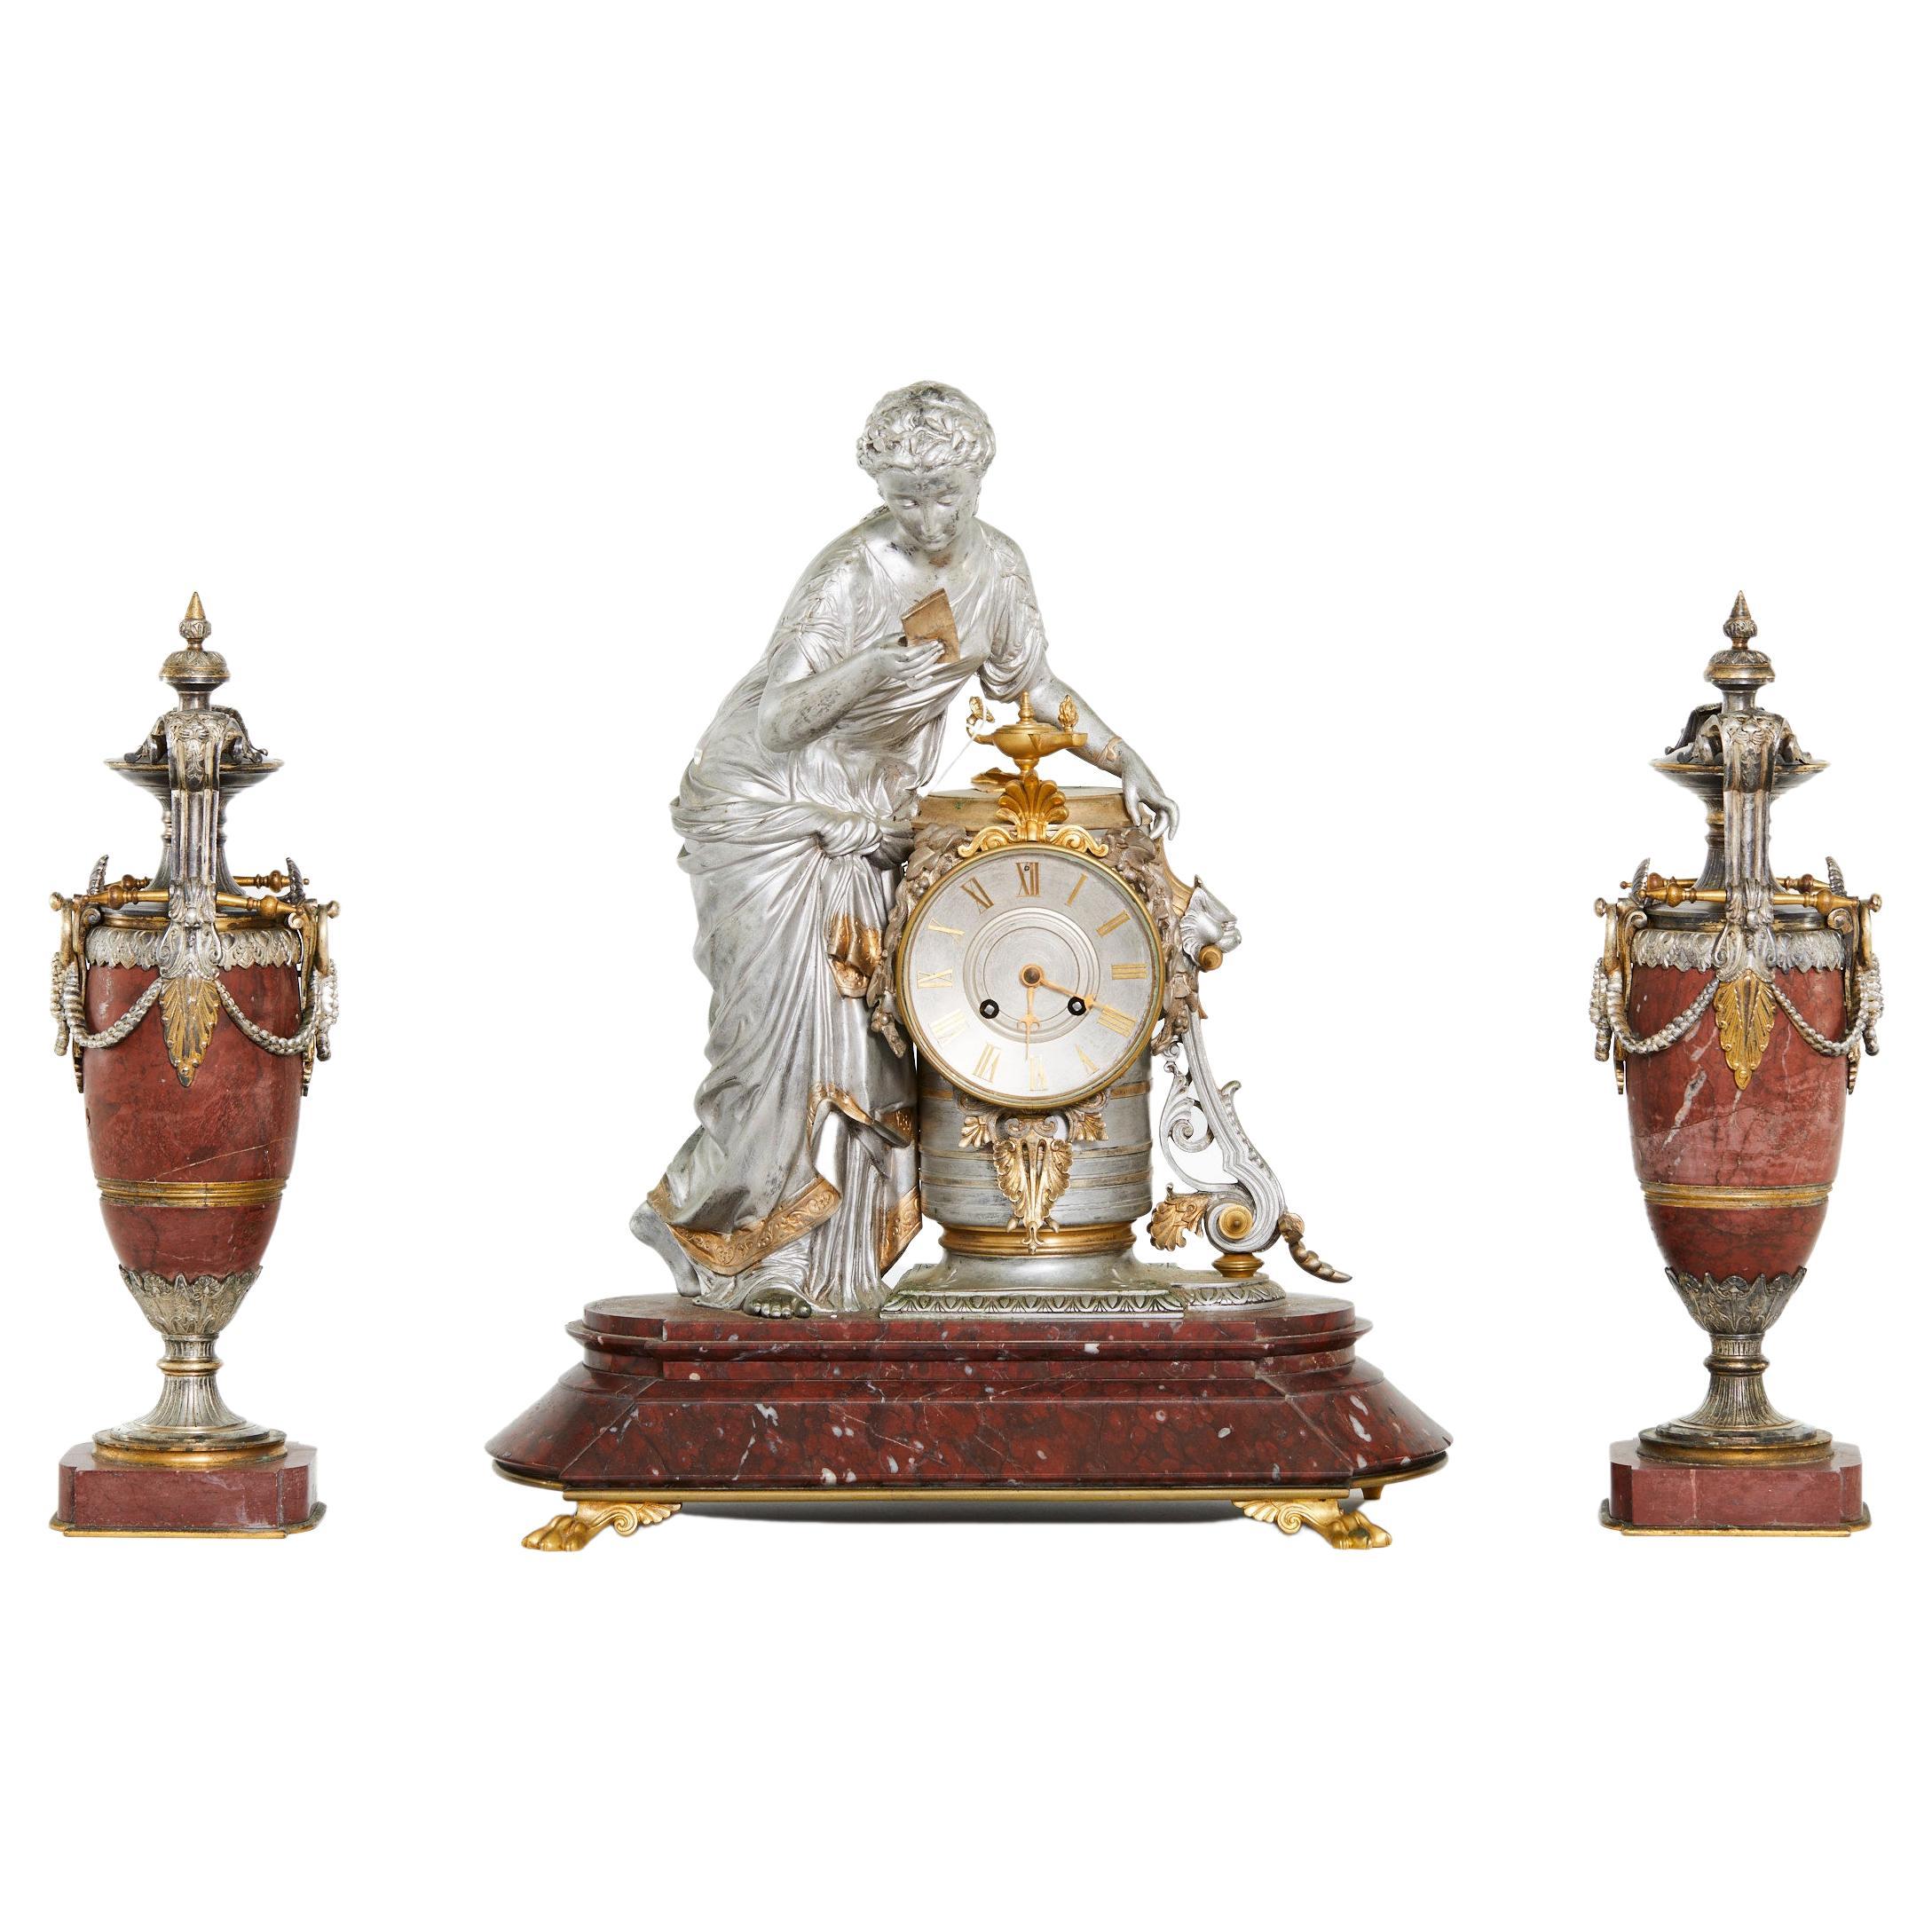 Mitte des 19. Jahrhunderts Französisch versilbert Bronze und rouge Marmor dreiteilige dekorative Uhr Garnitur gesetzt. Die Uhr zeigt eine klassisch gestaltete Frau mit drapierten Gewändern, flankiert von zwei passenden Urnen. Acht Tage Messing /